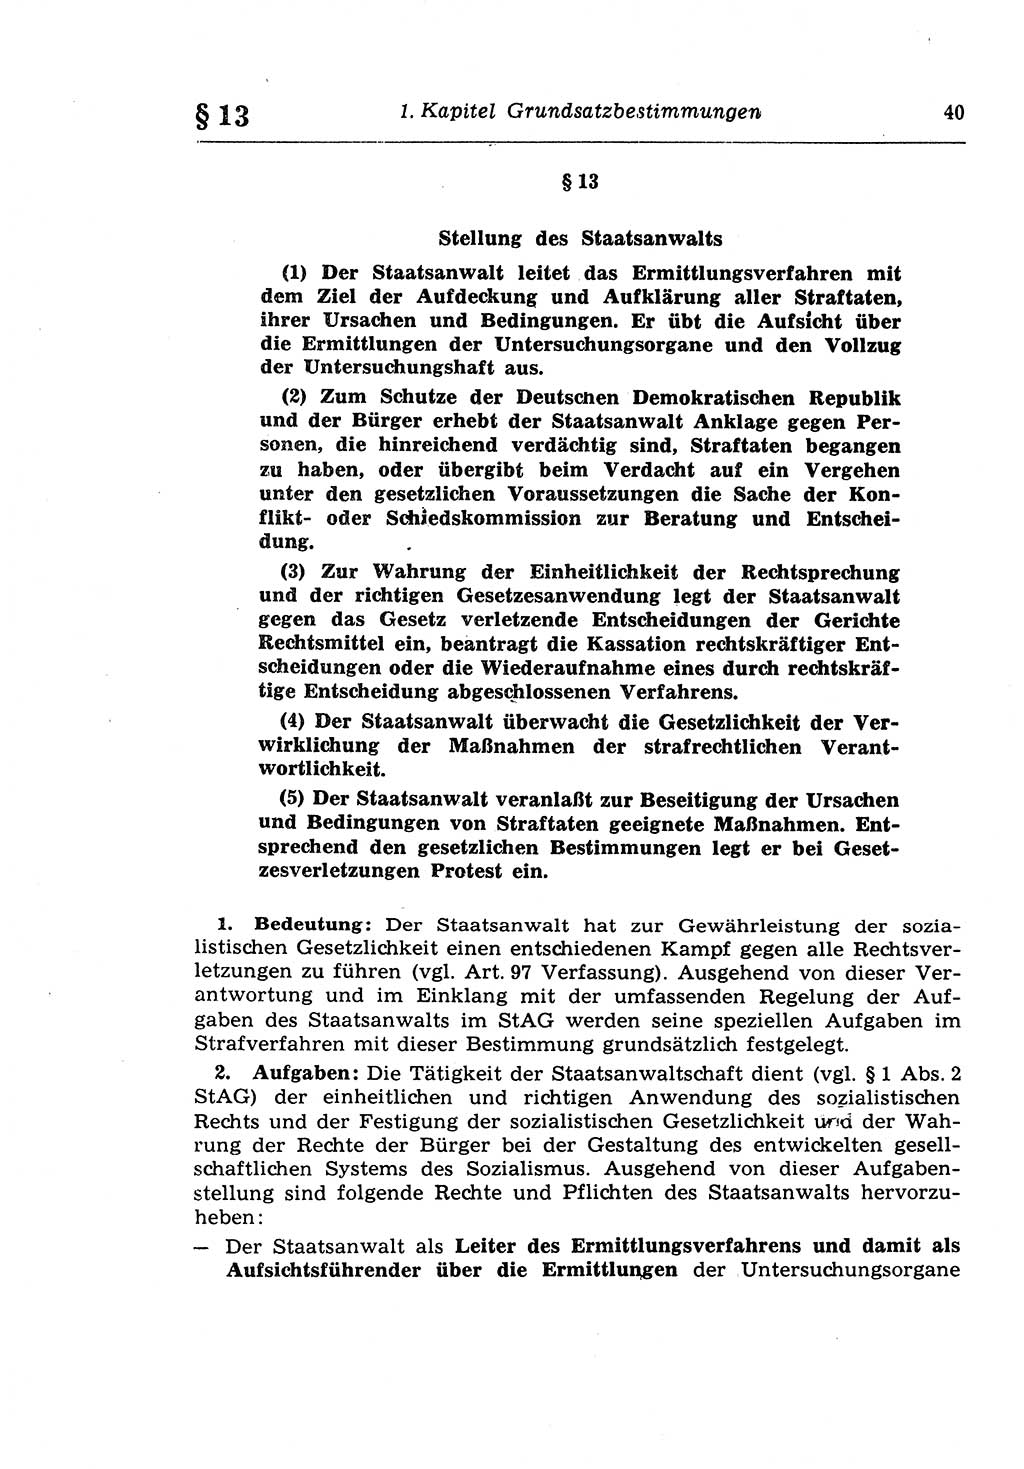 Strafprozeßrecht der DDR (Deutsche Demokratische Republik), Lehrkommentar zur Strafprozeßordnung (StPO) 1968, Seite 40 (Strafprozeßr. DDR Lehrkomm. StPO 19688, S. 40)